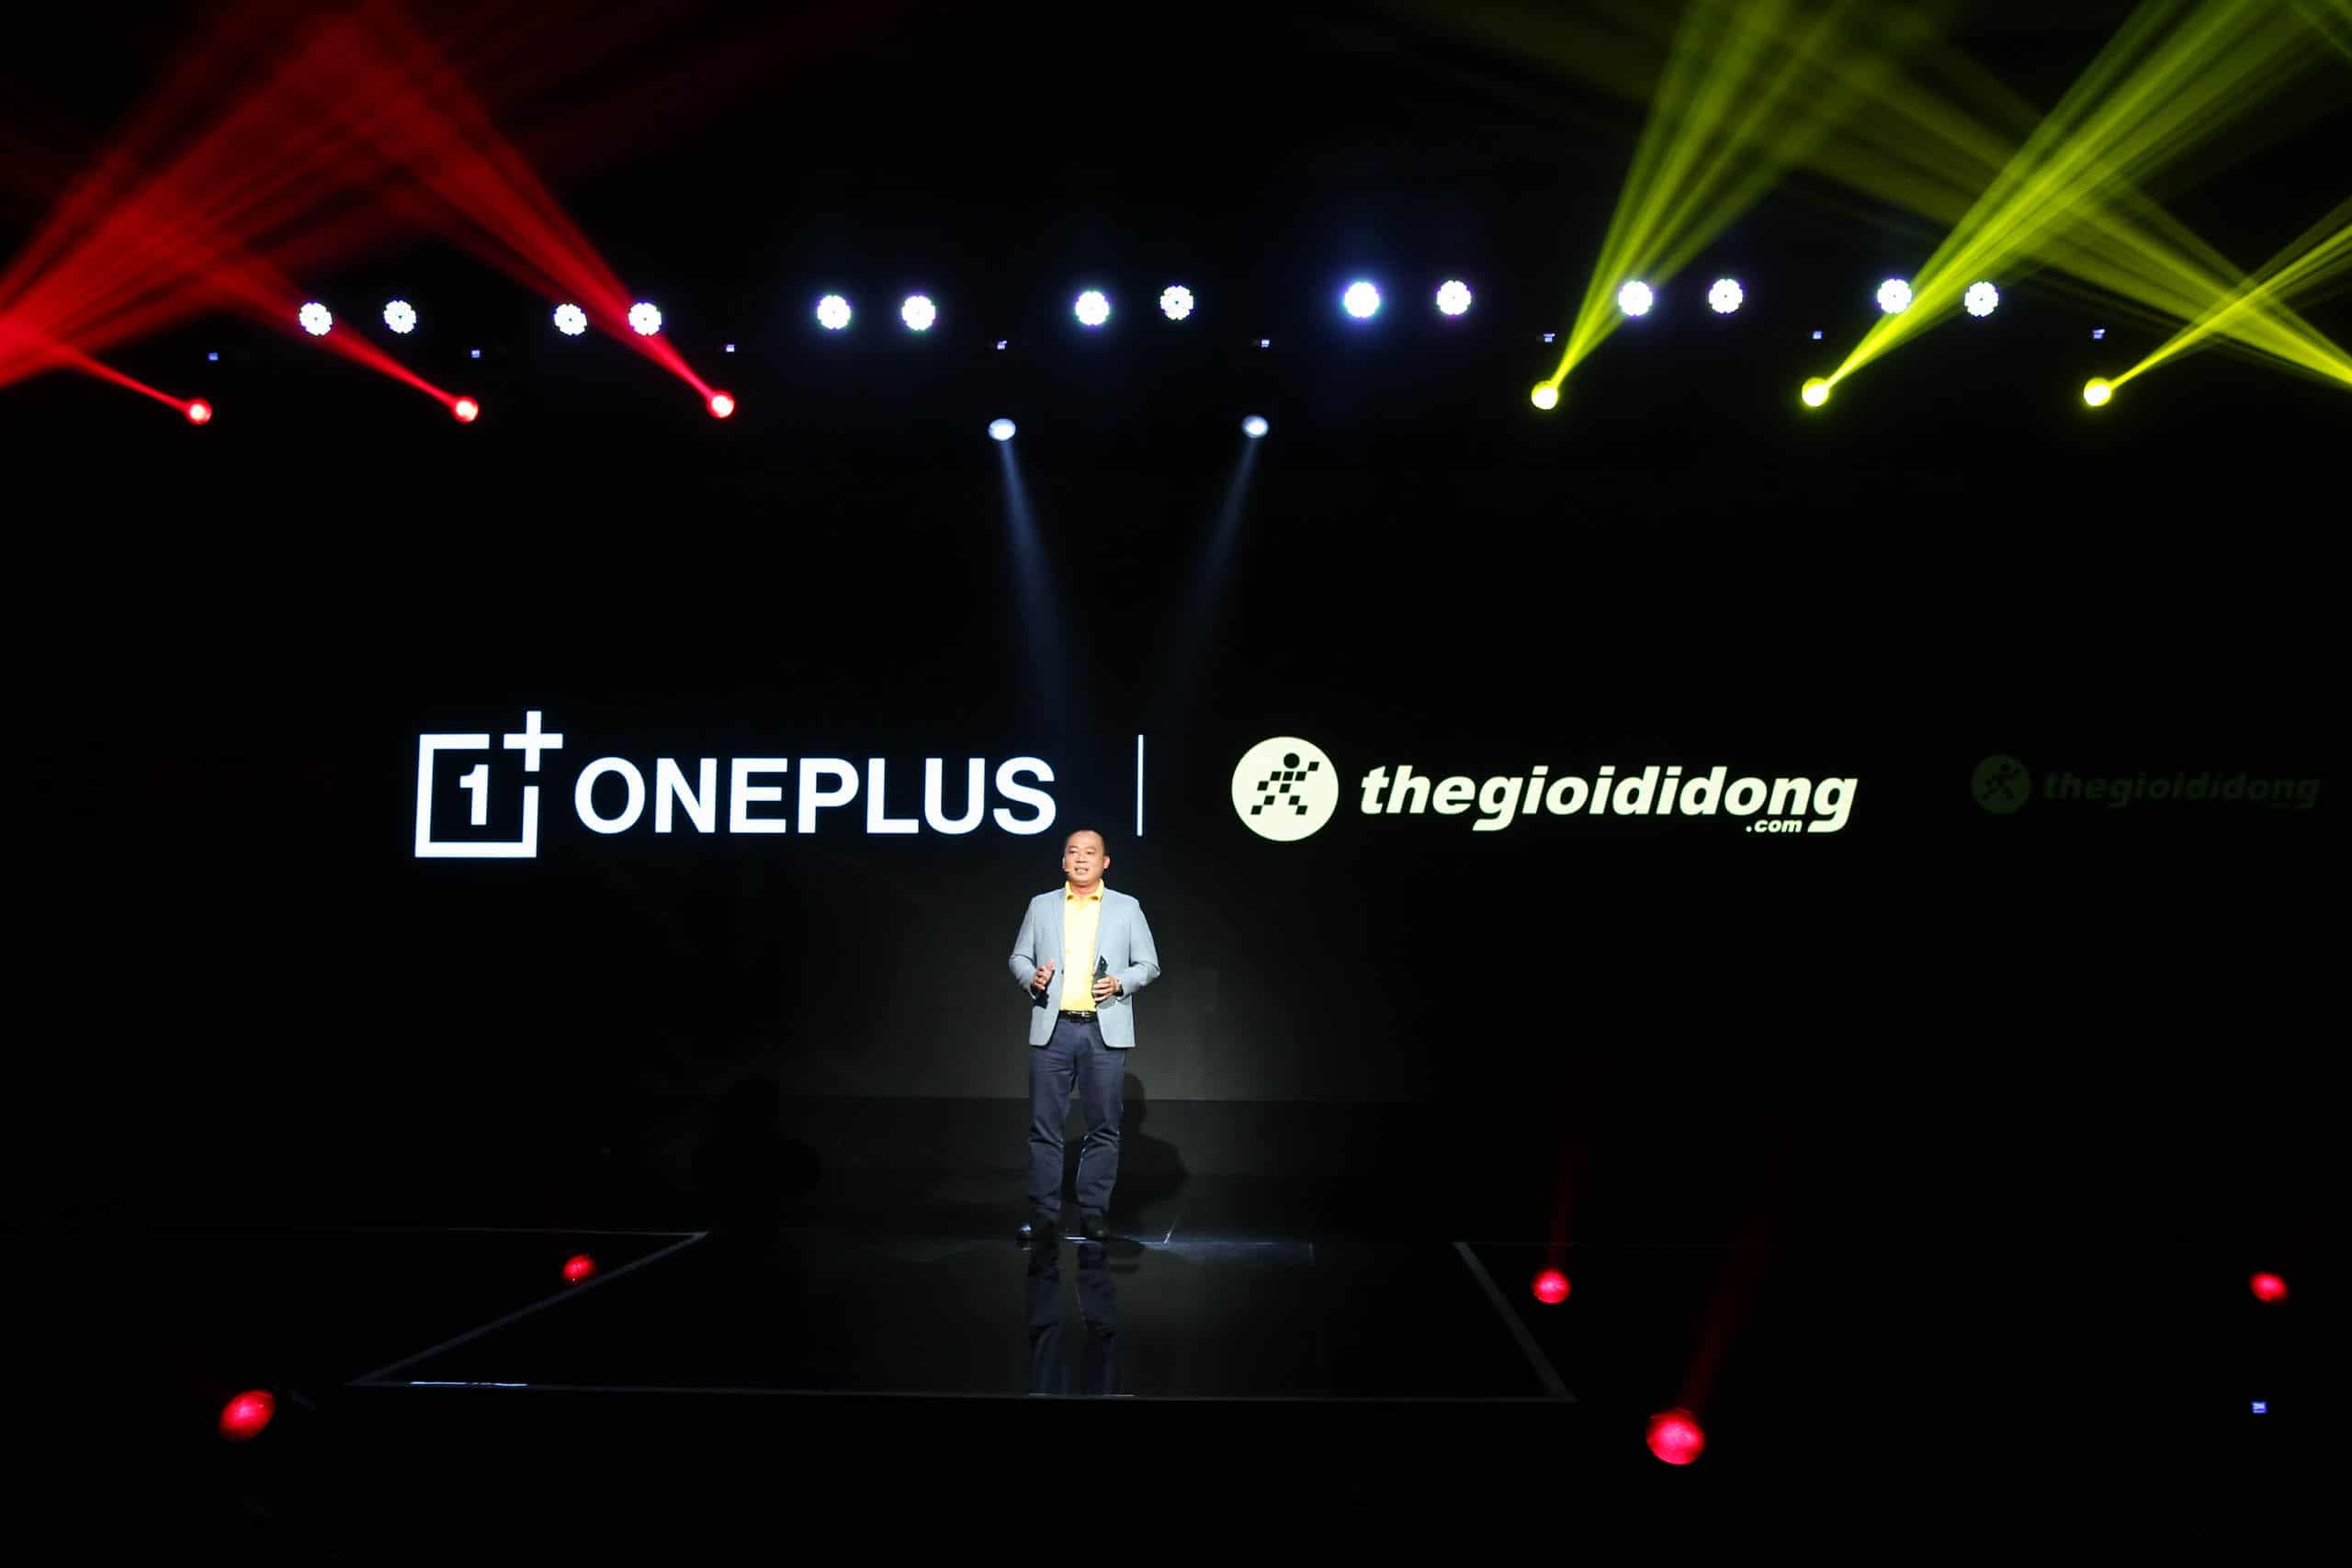 OnePlus chính thức ra mắt tại Việt Nam OnePlus 8 Pro 5G và OnePlus Nord 5G, độc quyền tại Thế Giới Di Động